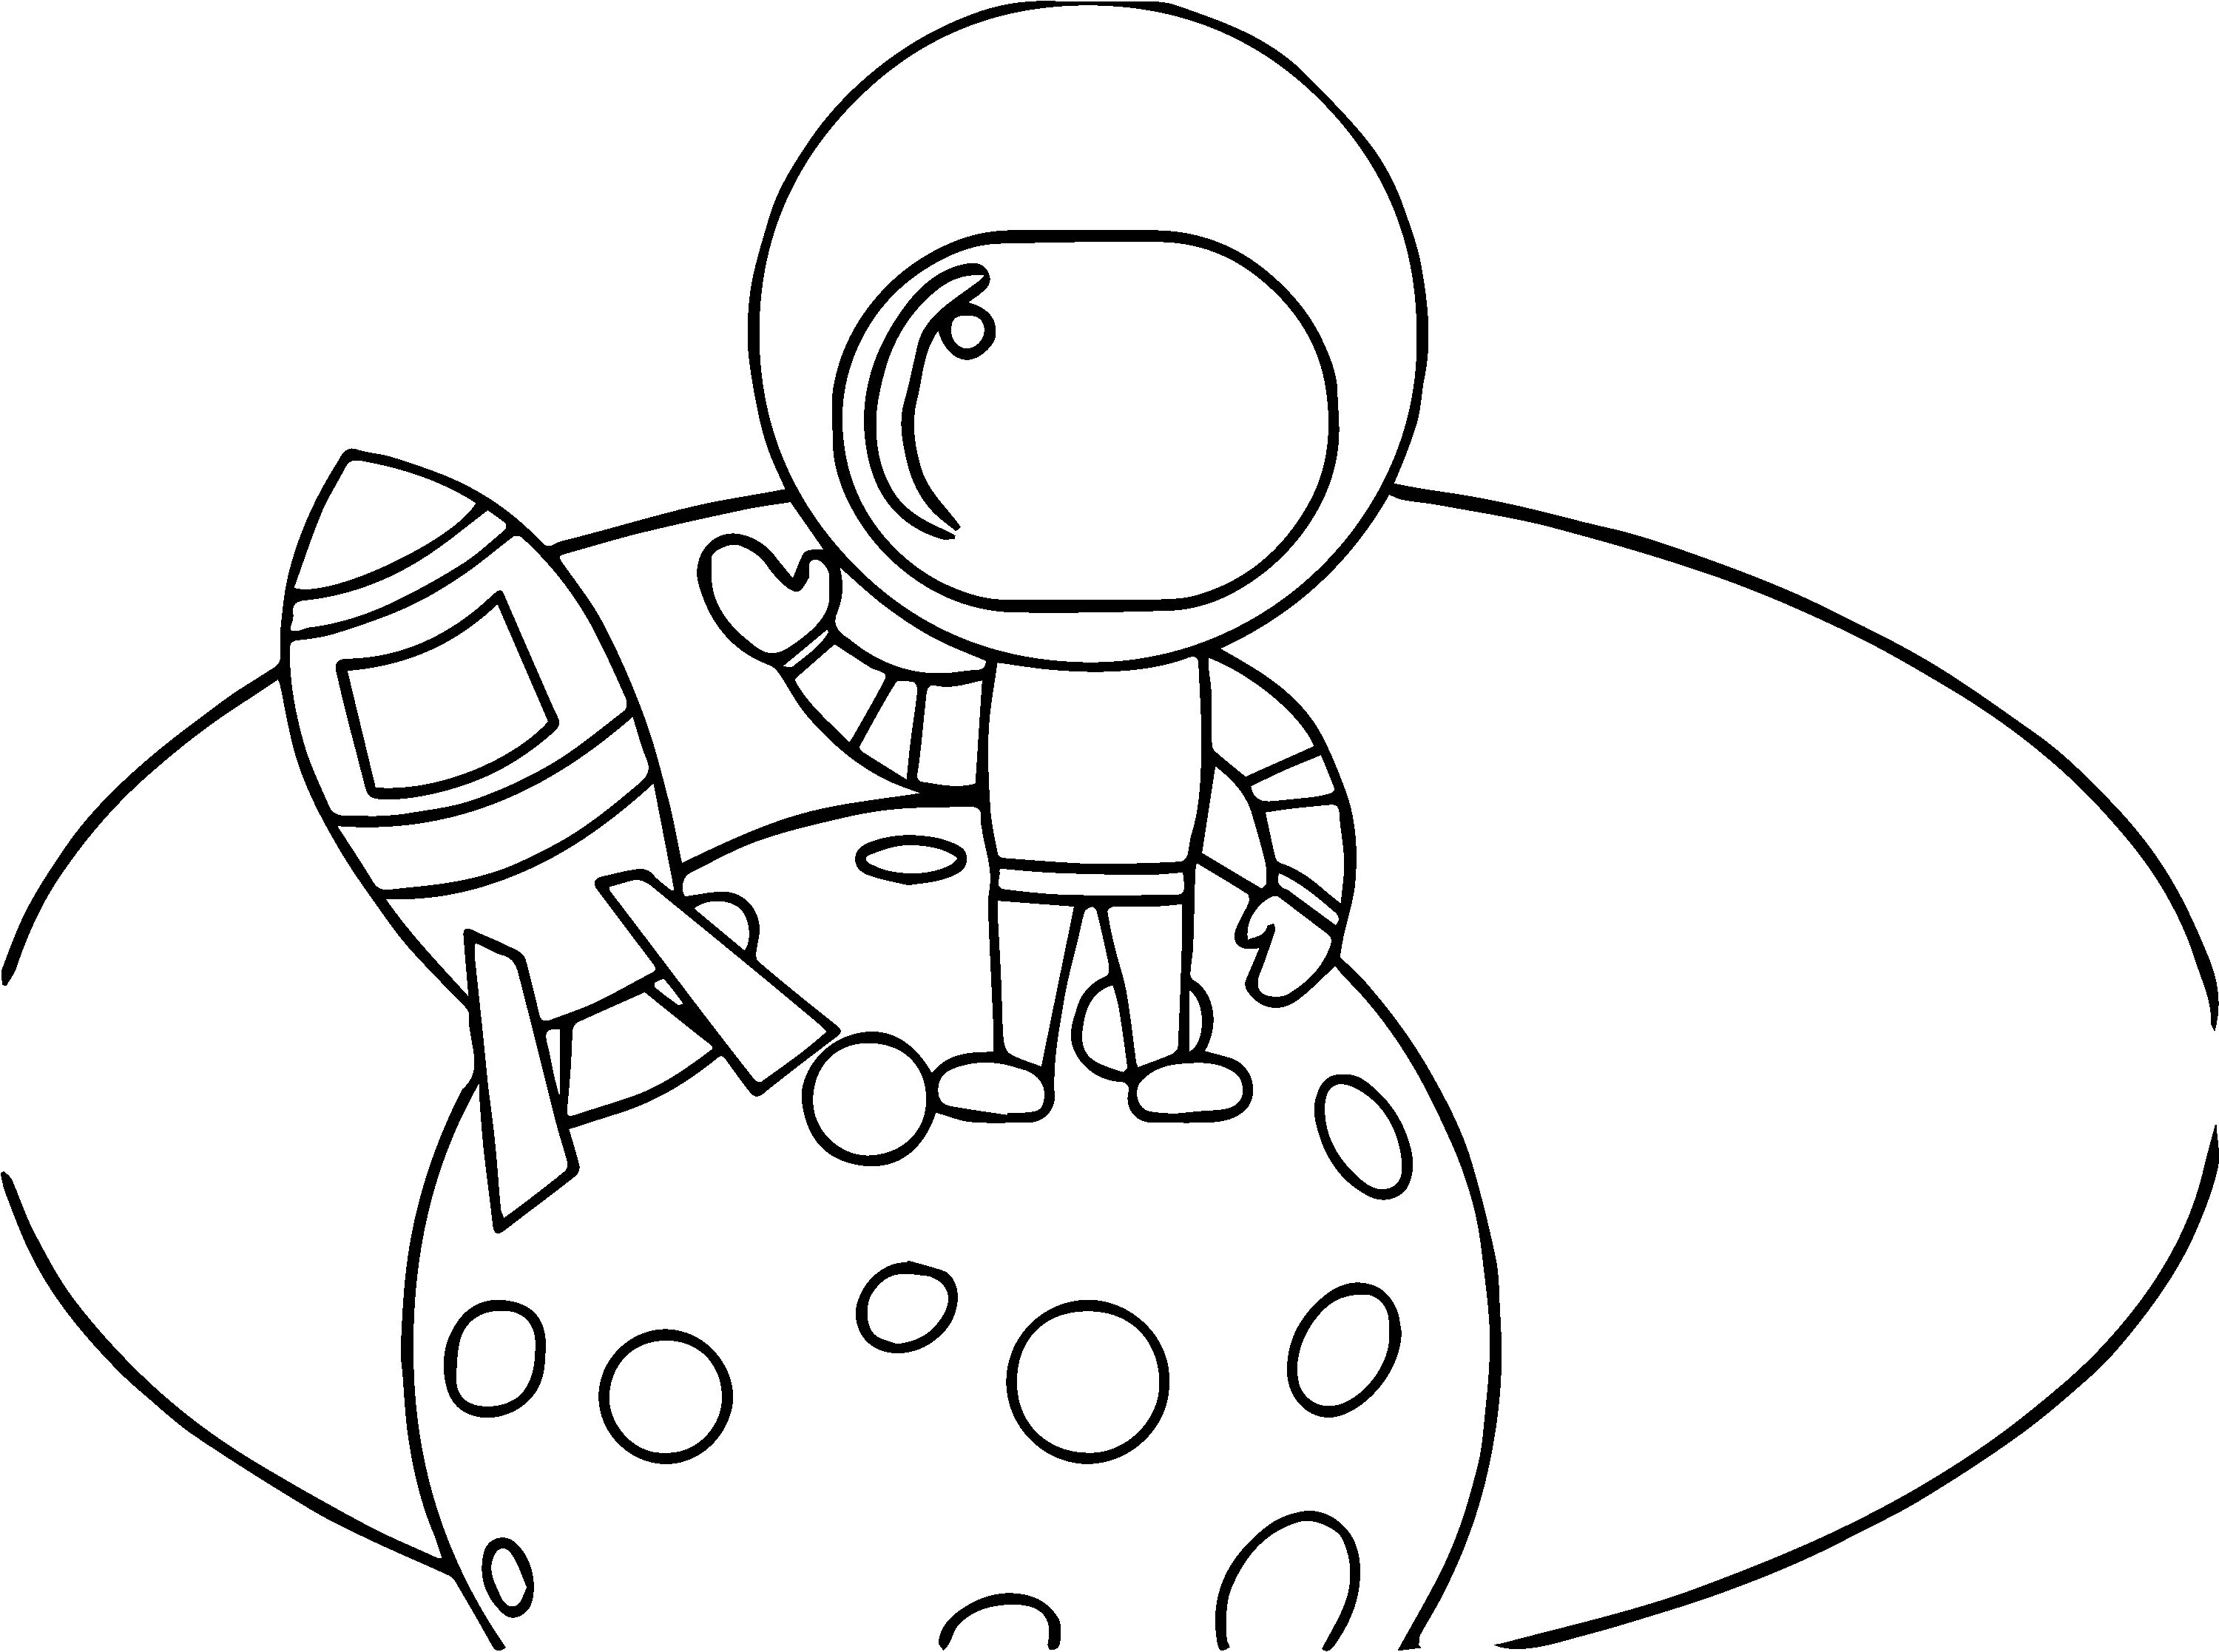 Космос раскраска для детей. Раскраска для малышей. Космос. Космонавт раскраска для детей. Раскраска. В космосе.